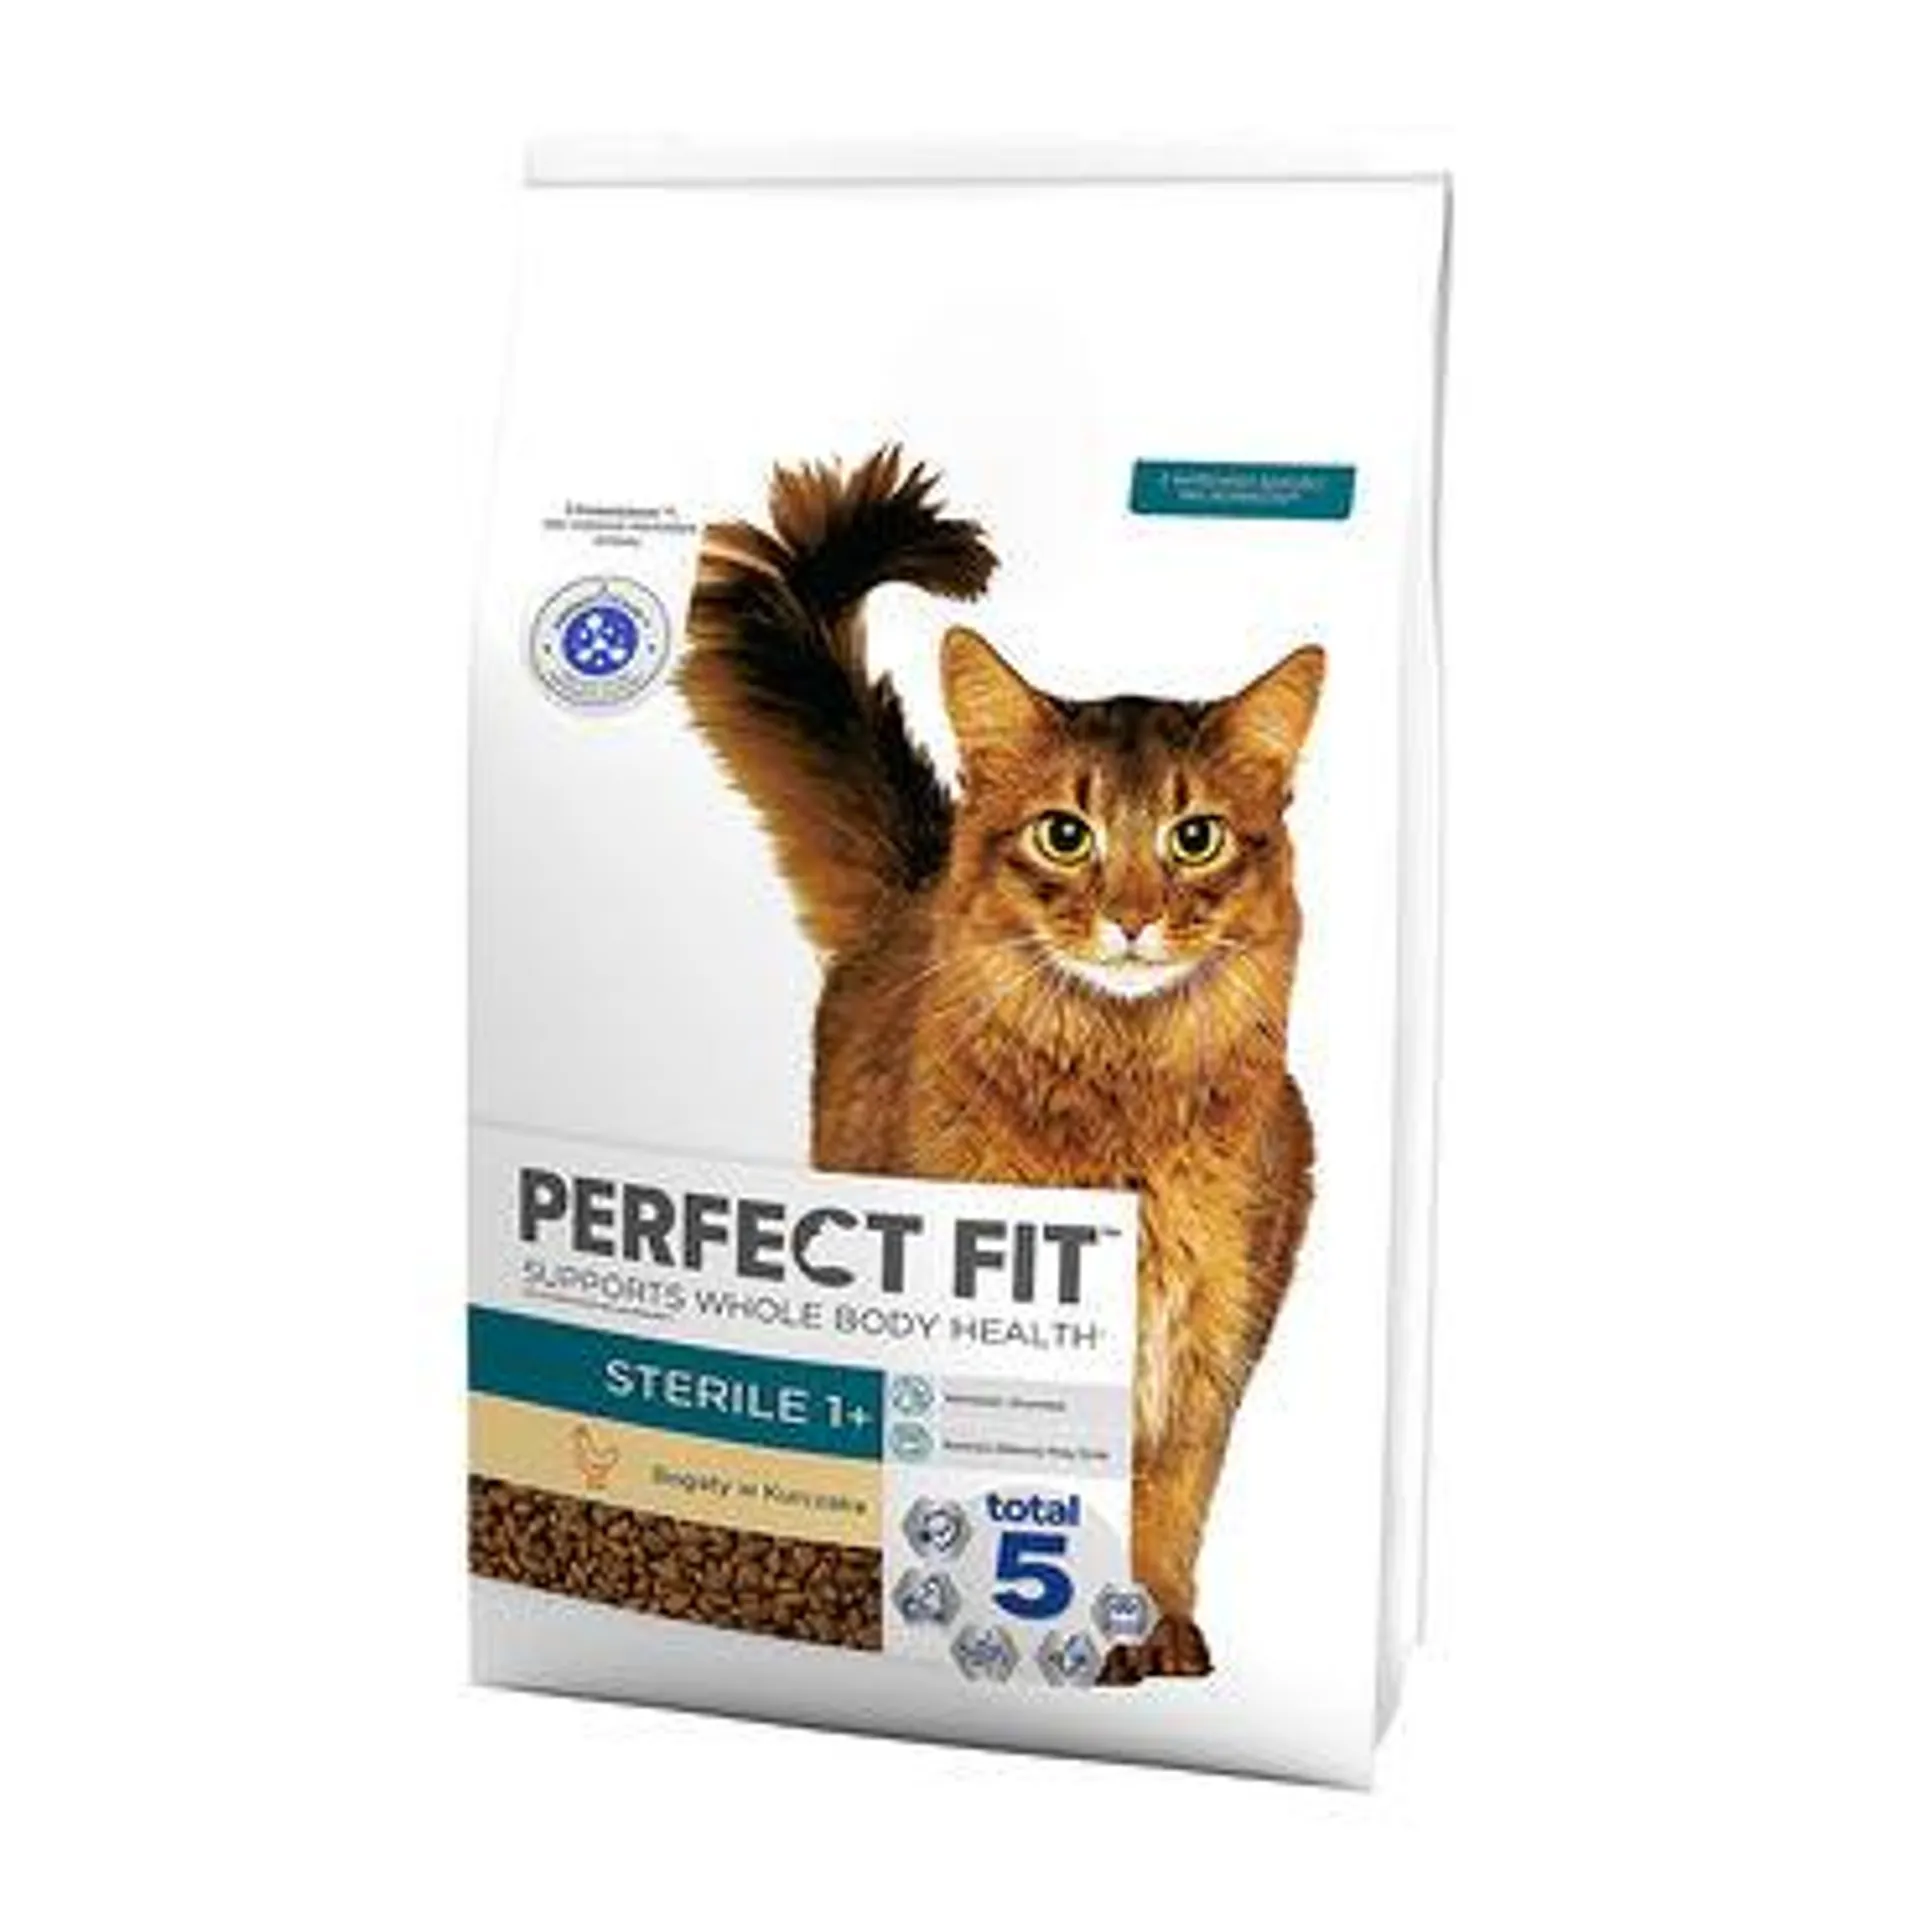 Sucha karma Perfect Fit Sterile 1+, dla dorosłych kotów, 7 kg